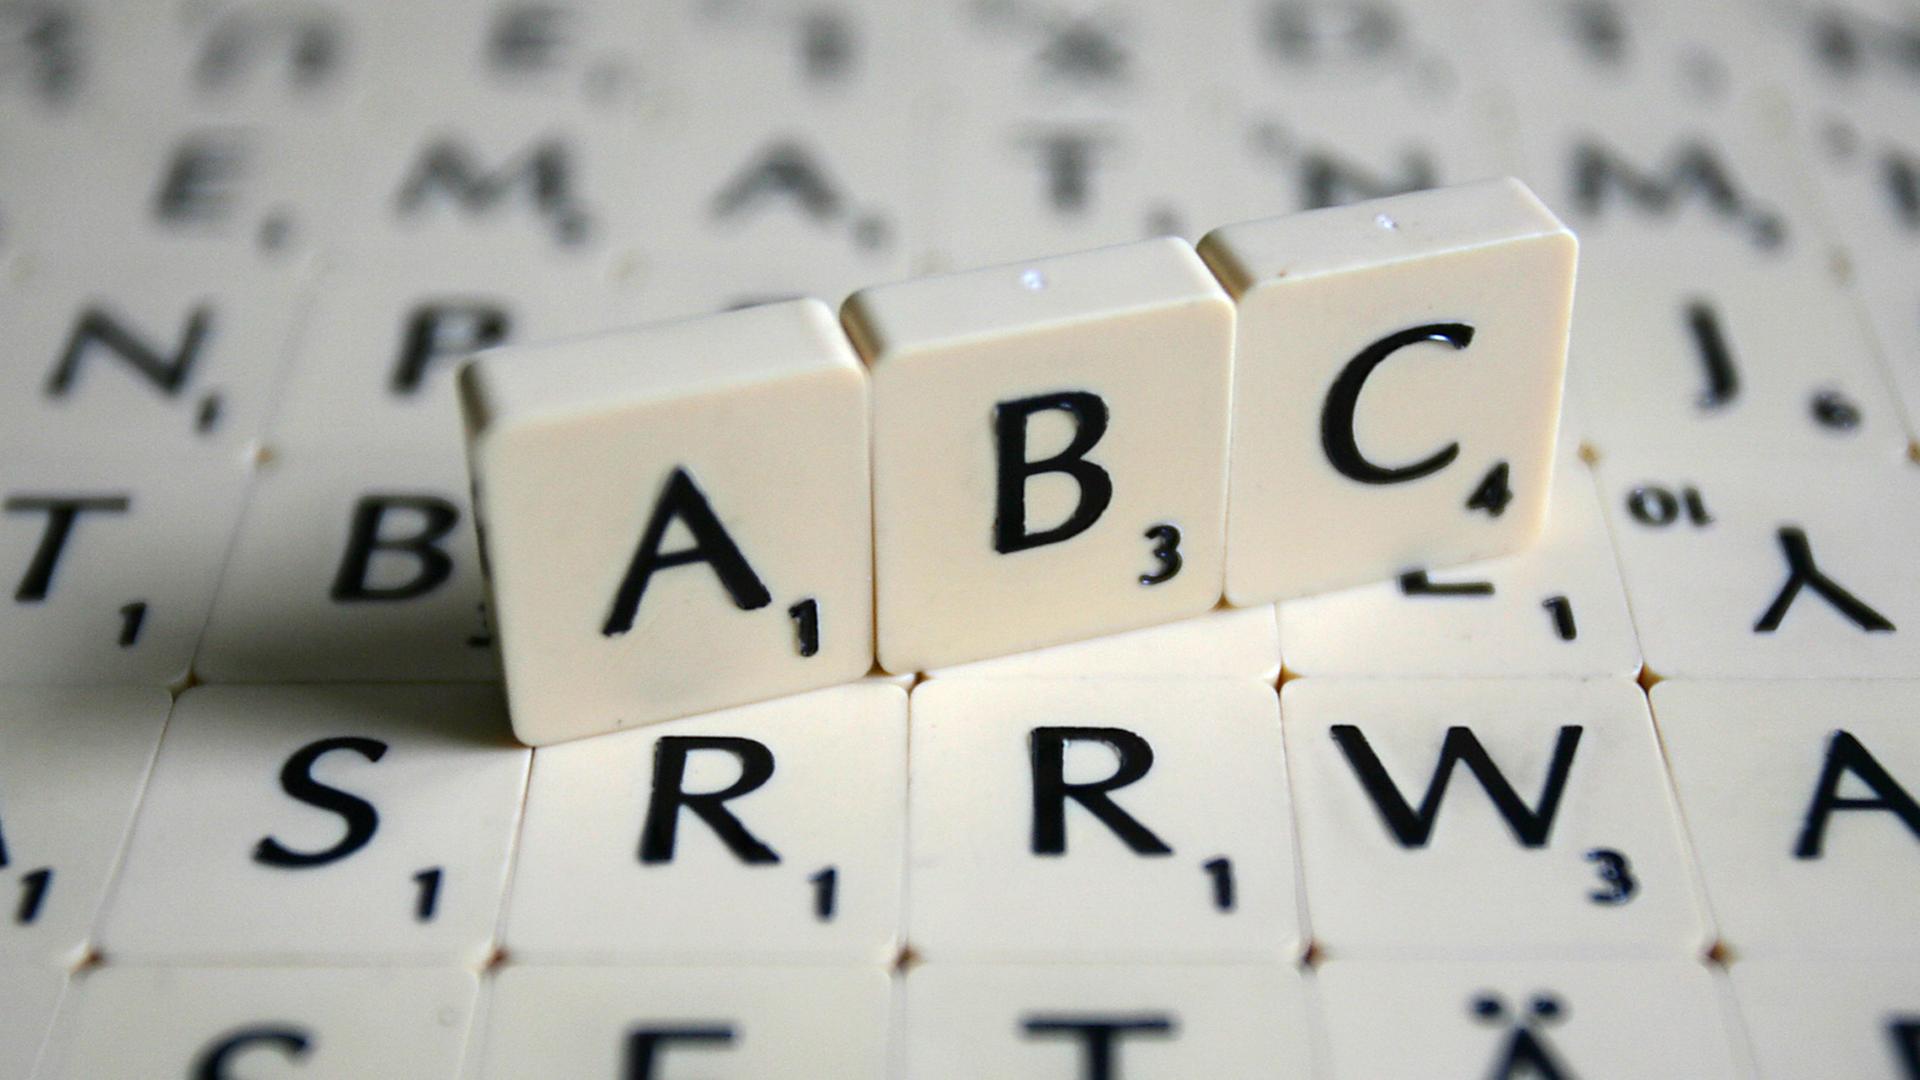 Man sieht die Buchstaben ABC des Spiels Scrabble.